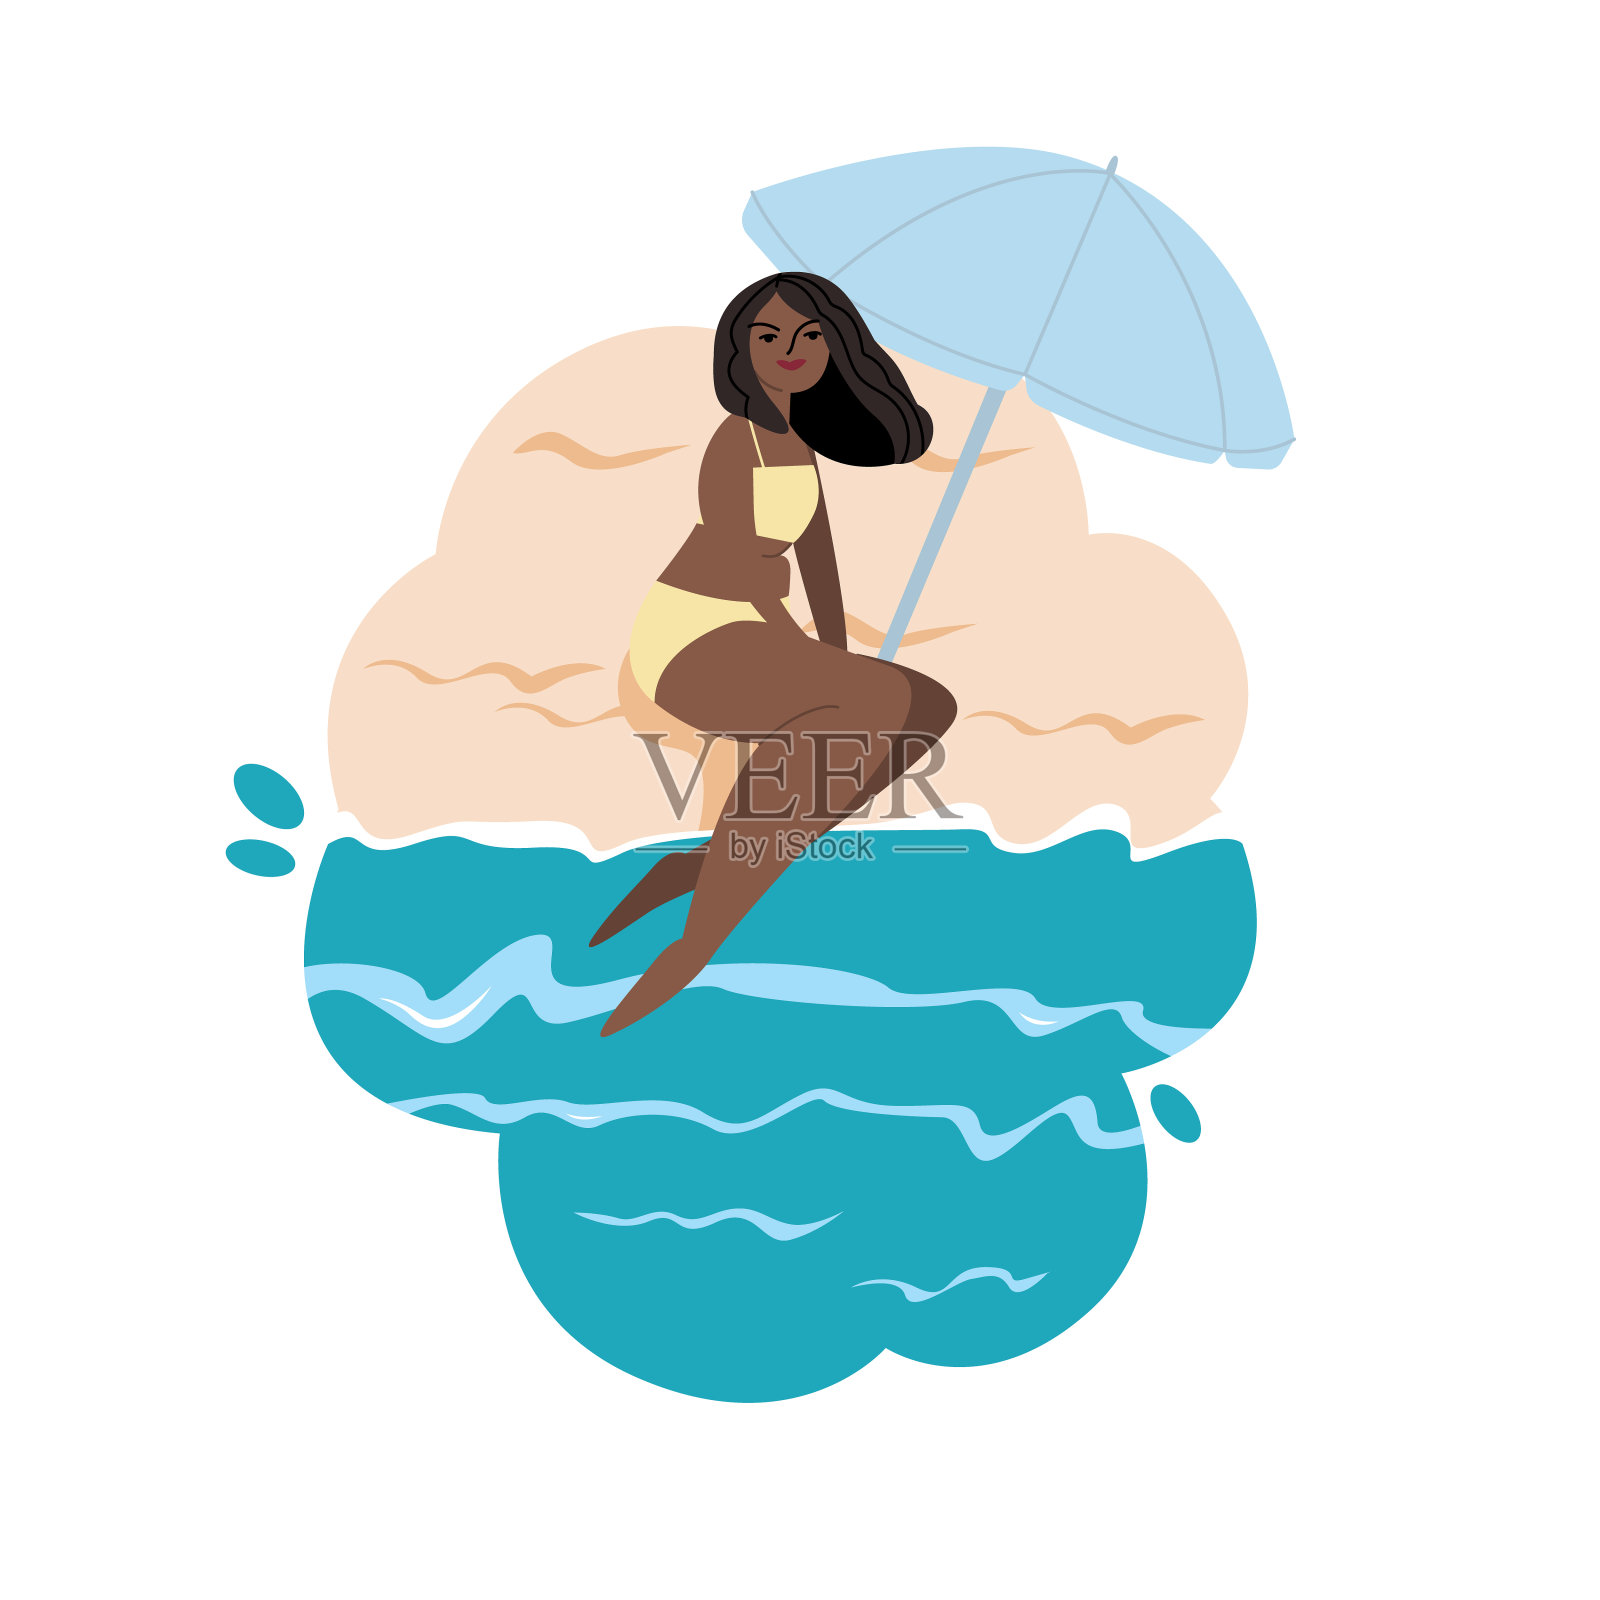 一个年轻的女孩坐在海滩上。休闲度假的卡通女性角色。喜欢炎热的夏天。平面矢量手绘插图。所有元素都是隔离的。插画图片素材